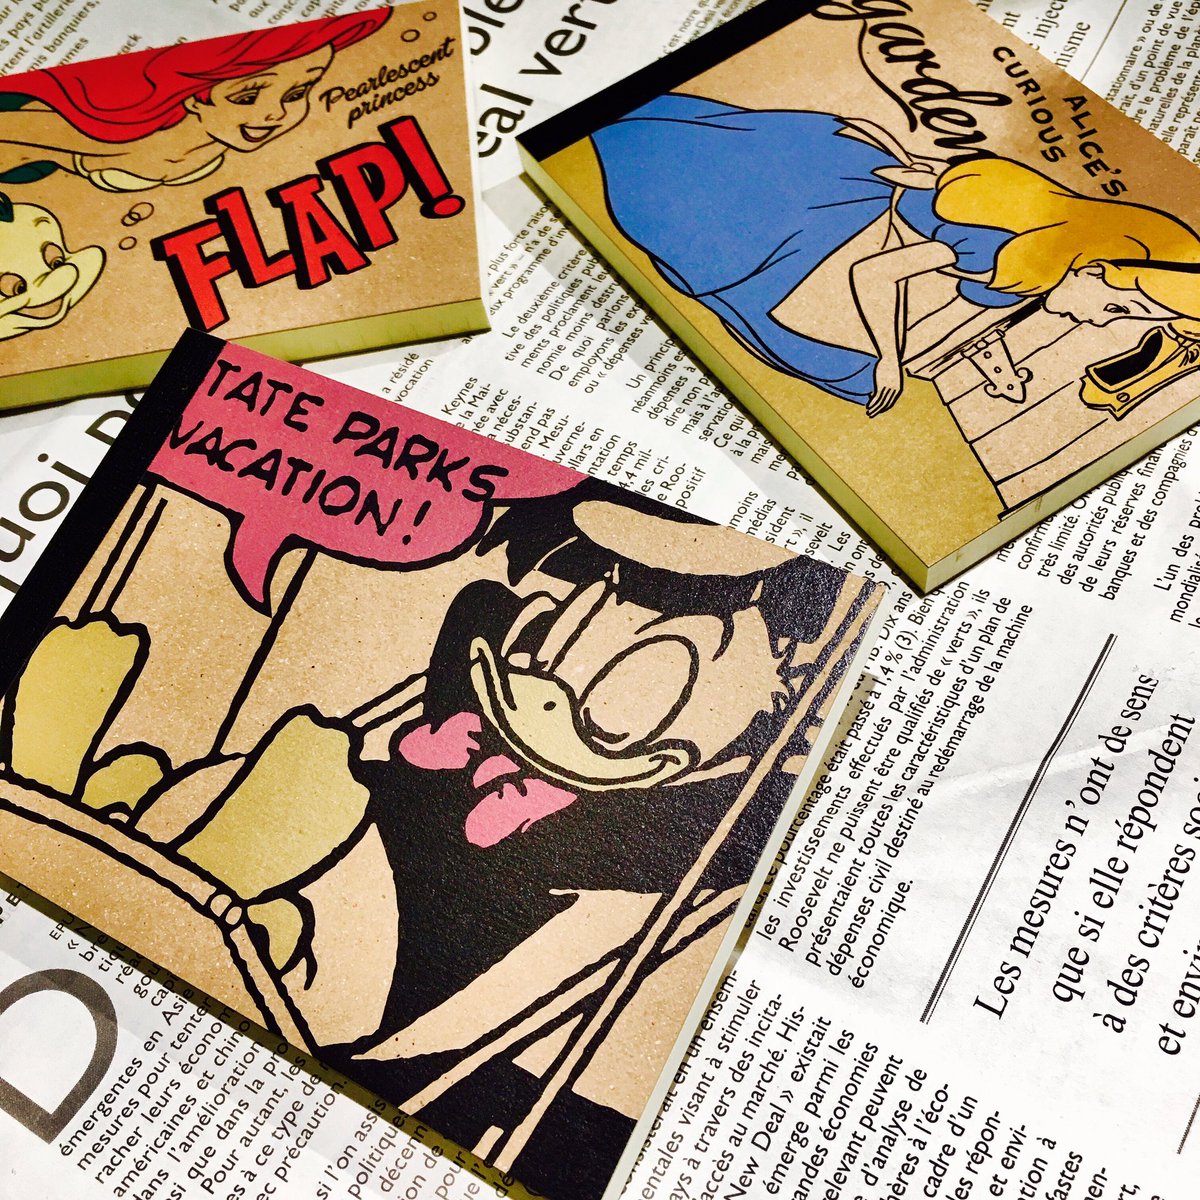 Goodscompanyland 商品紹介 ディズニーのキャラクターが とても可愛らしいメモ帳になりました ﾟ コミック調のイラストがとても良いかんじ 大人な女子にも 使って頂けるはずっっ メモはもちろん ちょっとしたお手紙にも W 雑貨屋 広島